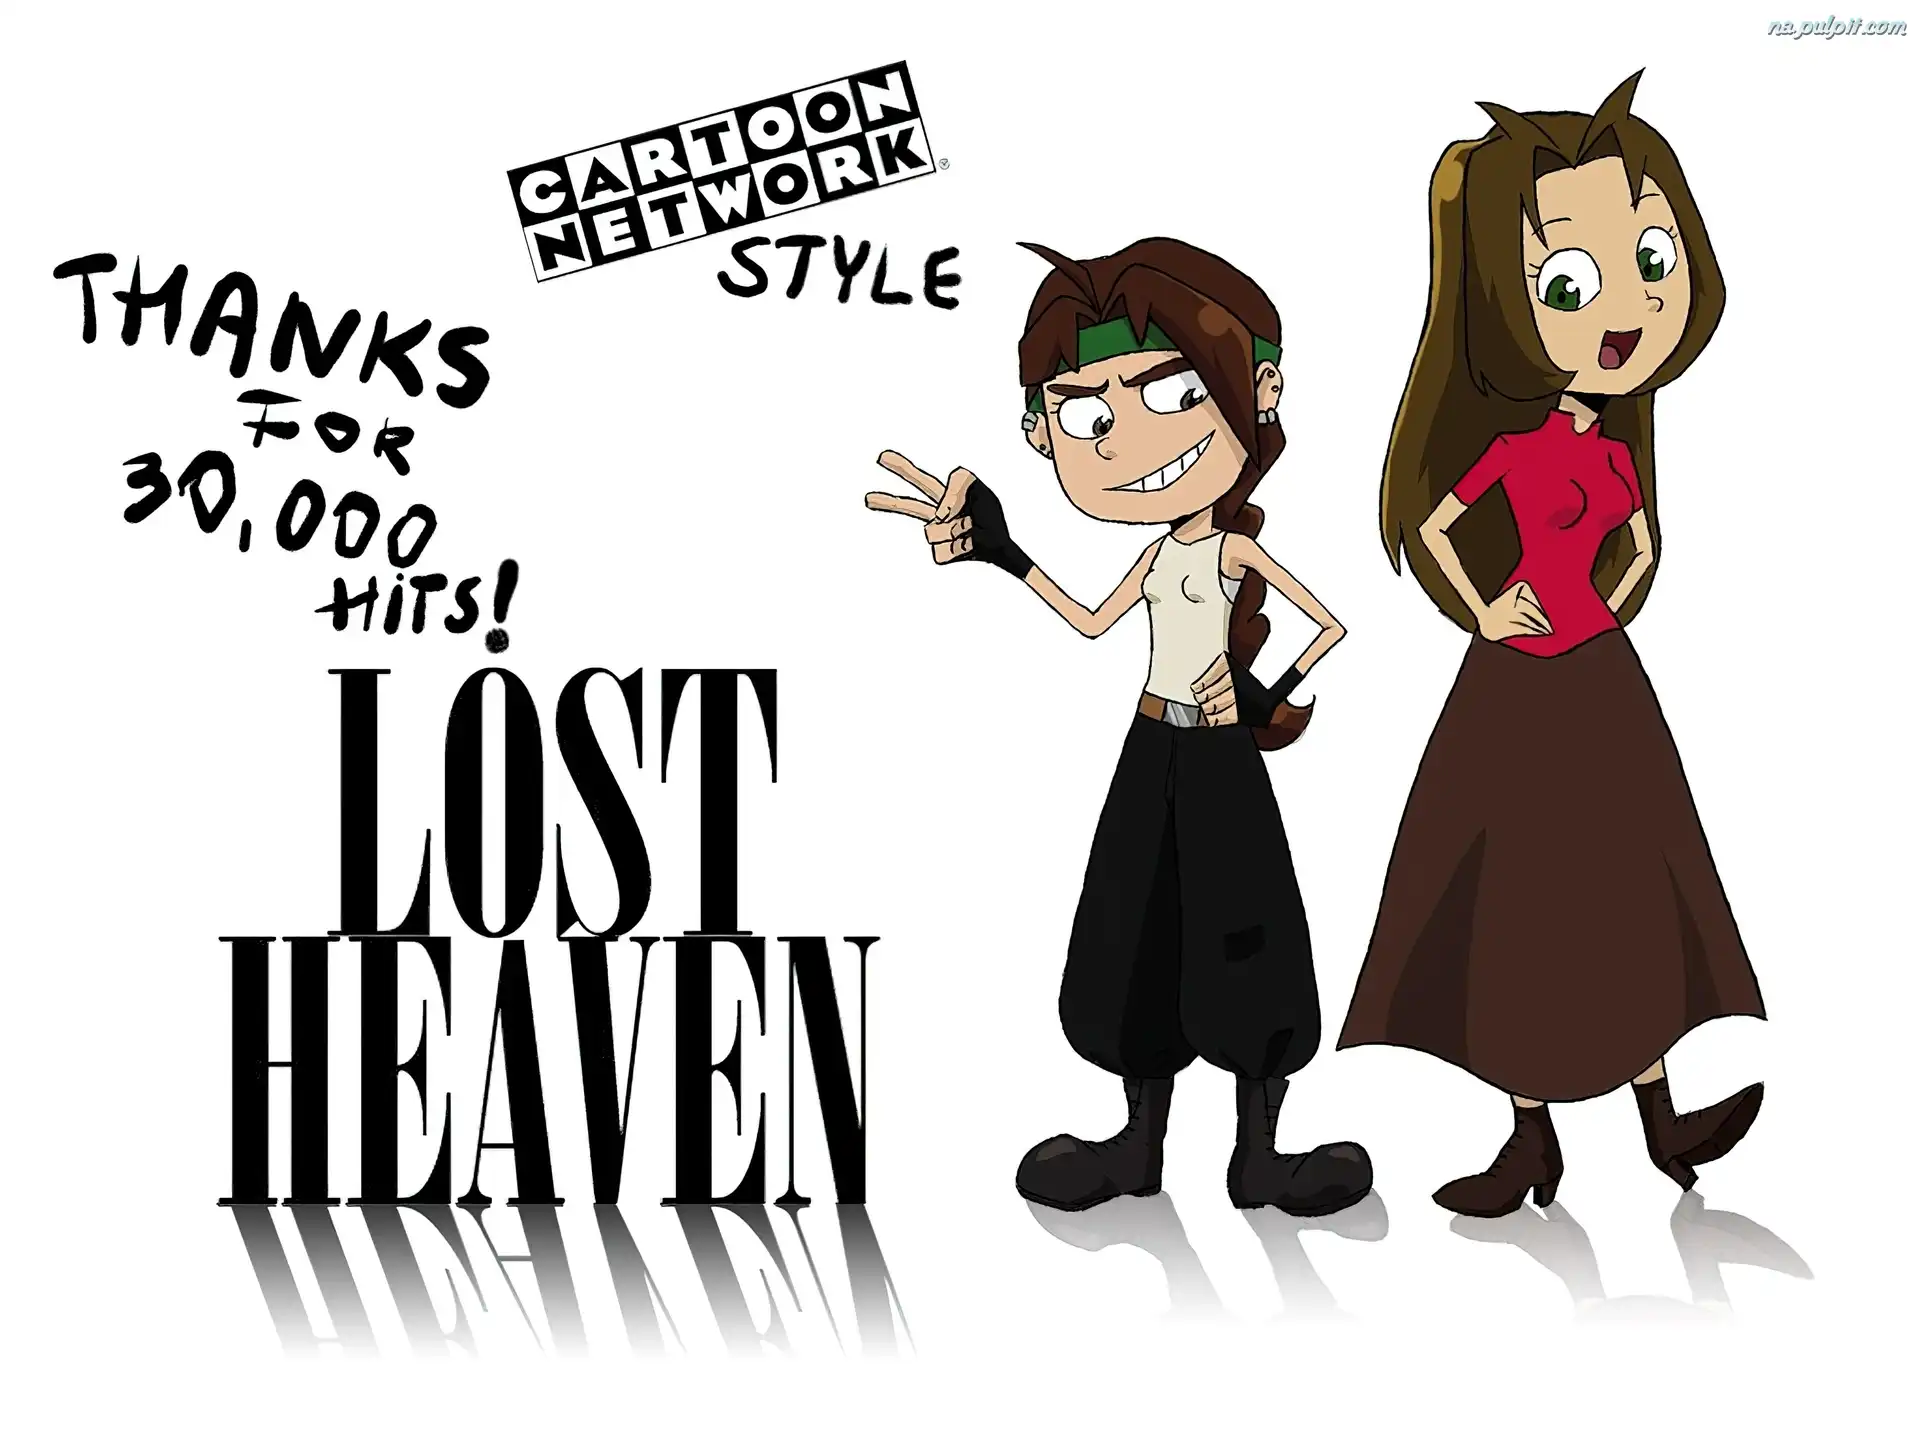 Cartoon Network, LOST HEAVEN